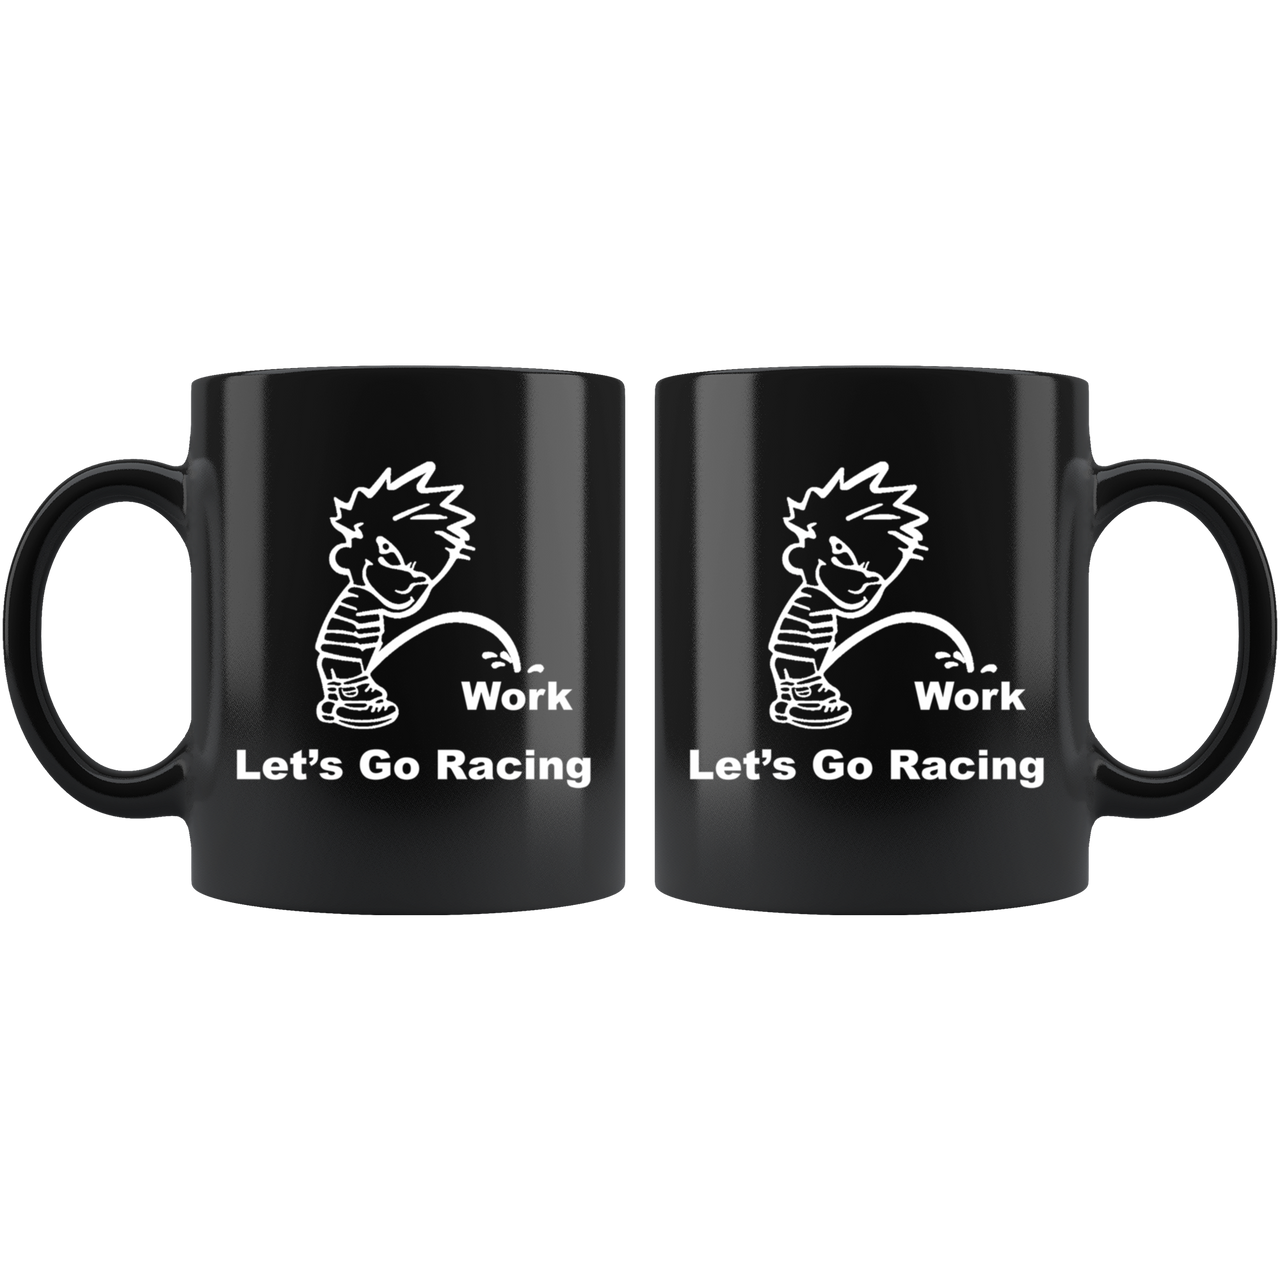 Let's Go Racing Mug!